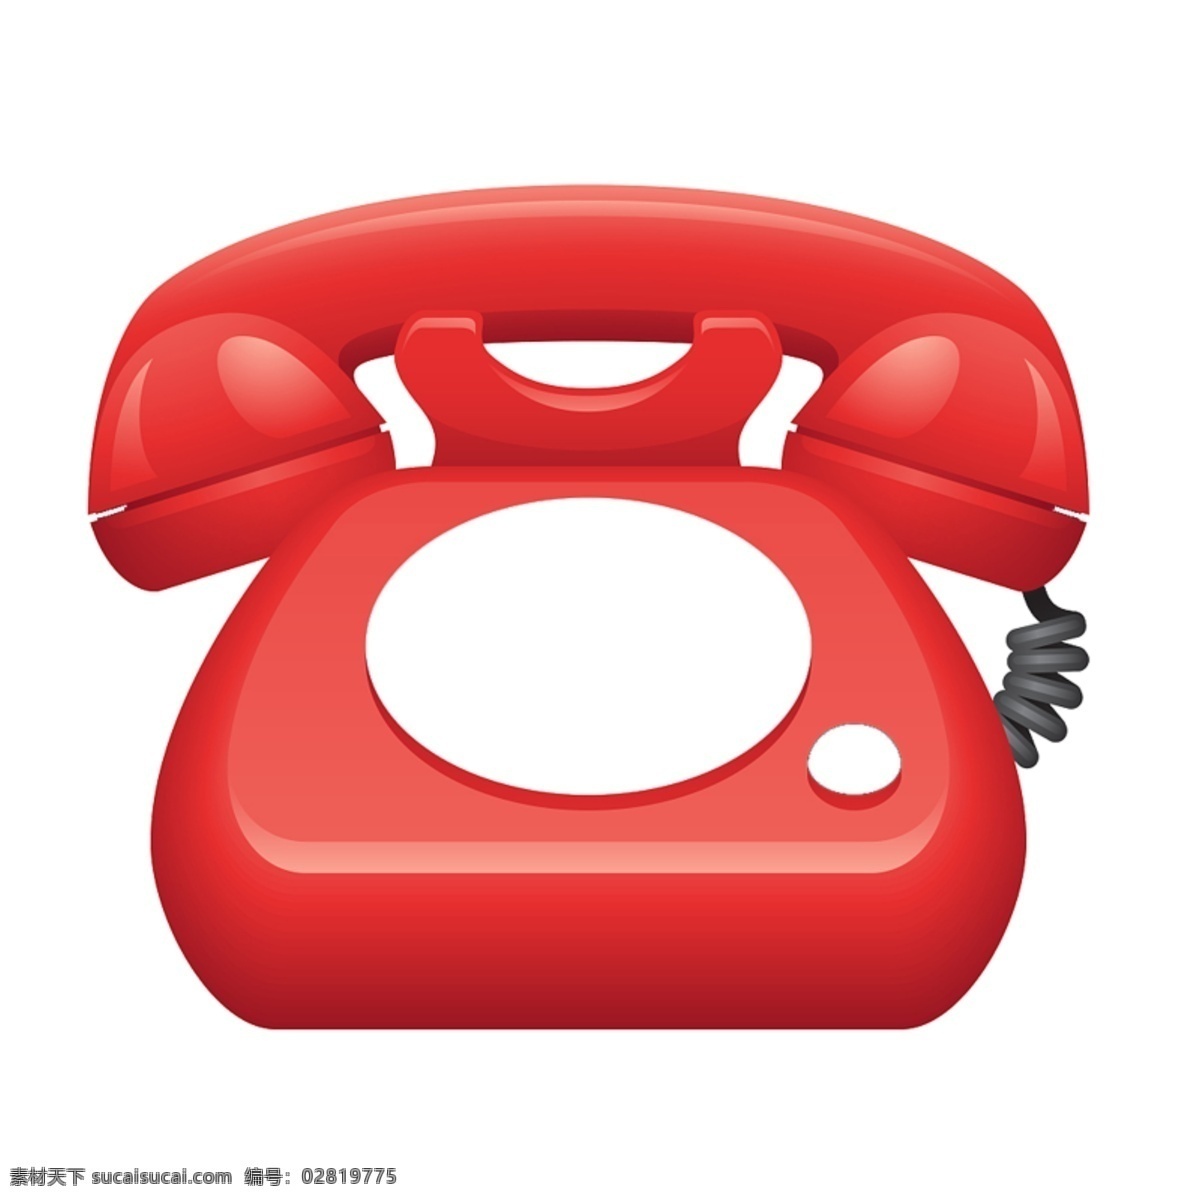 红色电话 电话图片 联系电话 国际电话 热线电话 服务热线 标志图标 其他图标